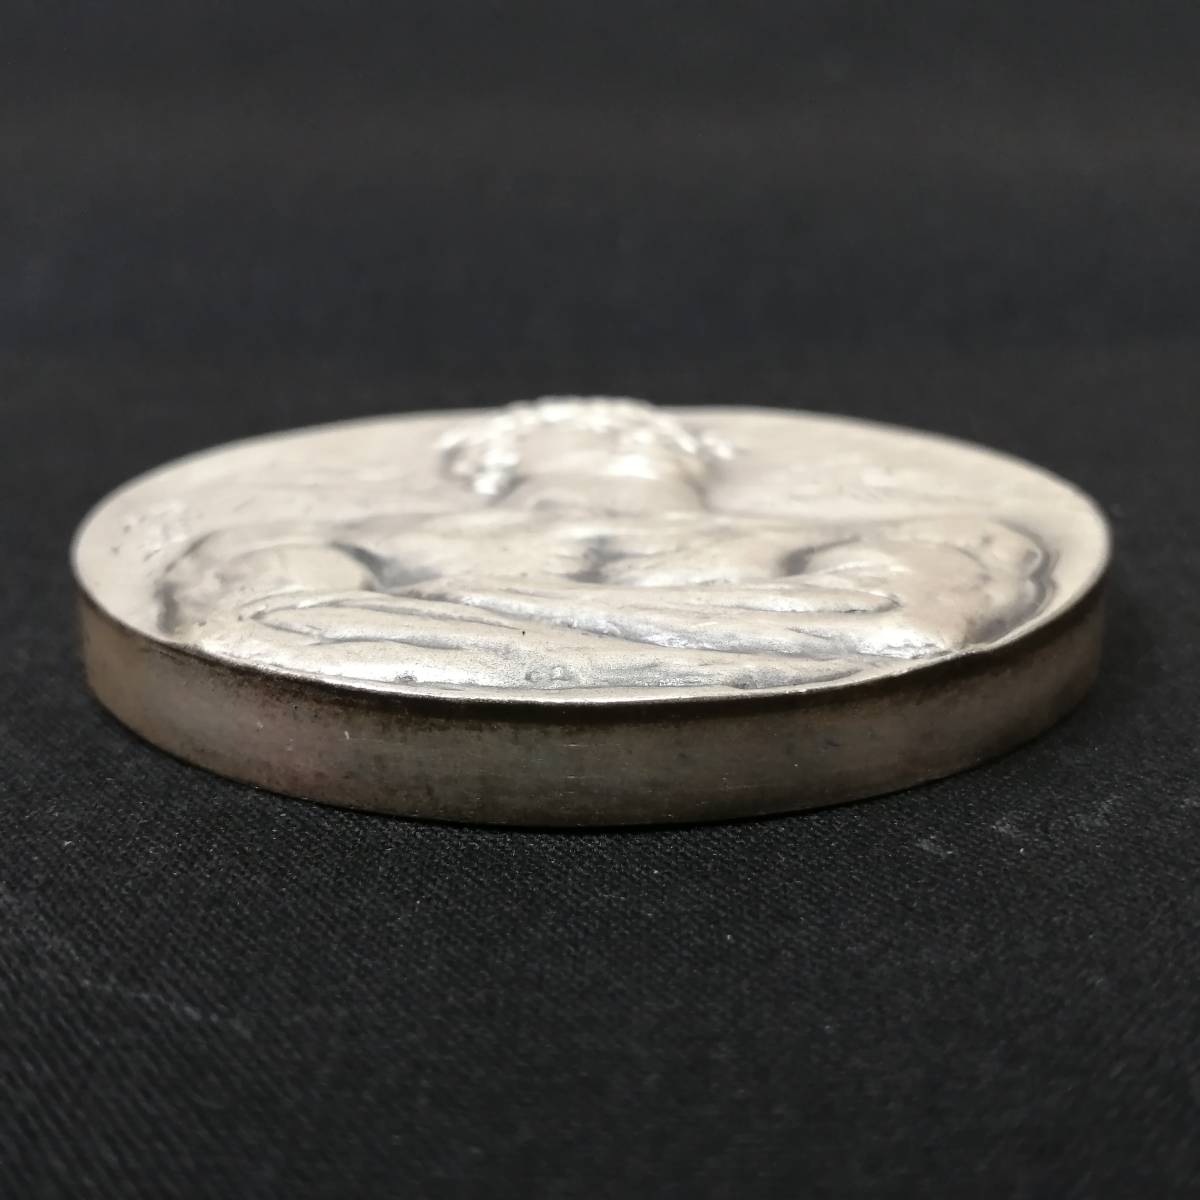 翌日発送可能】 札幌冬季オリンピック1972年純銀メダル105g 旧貨幣